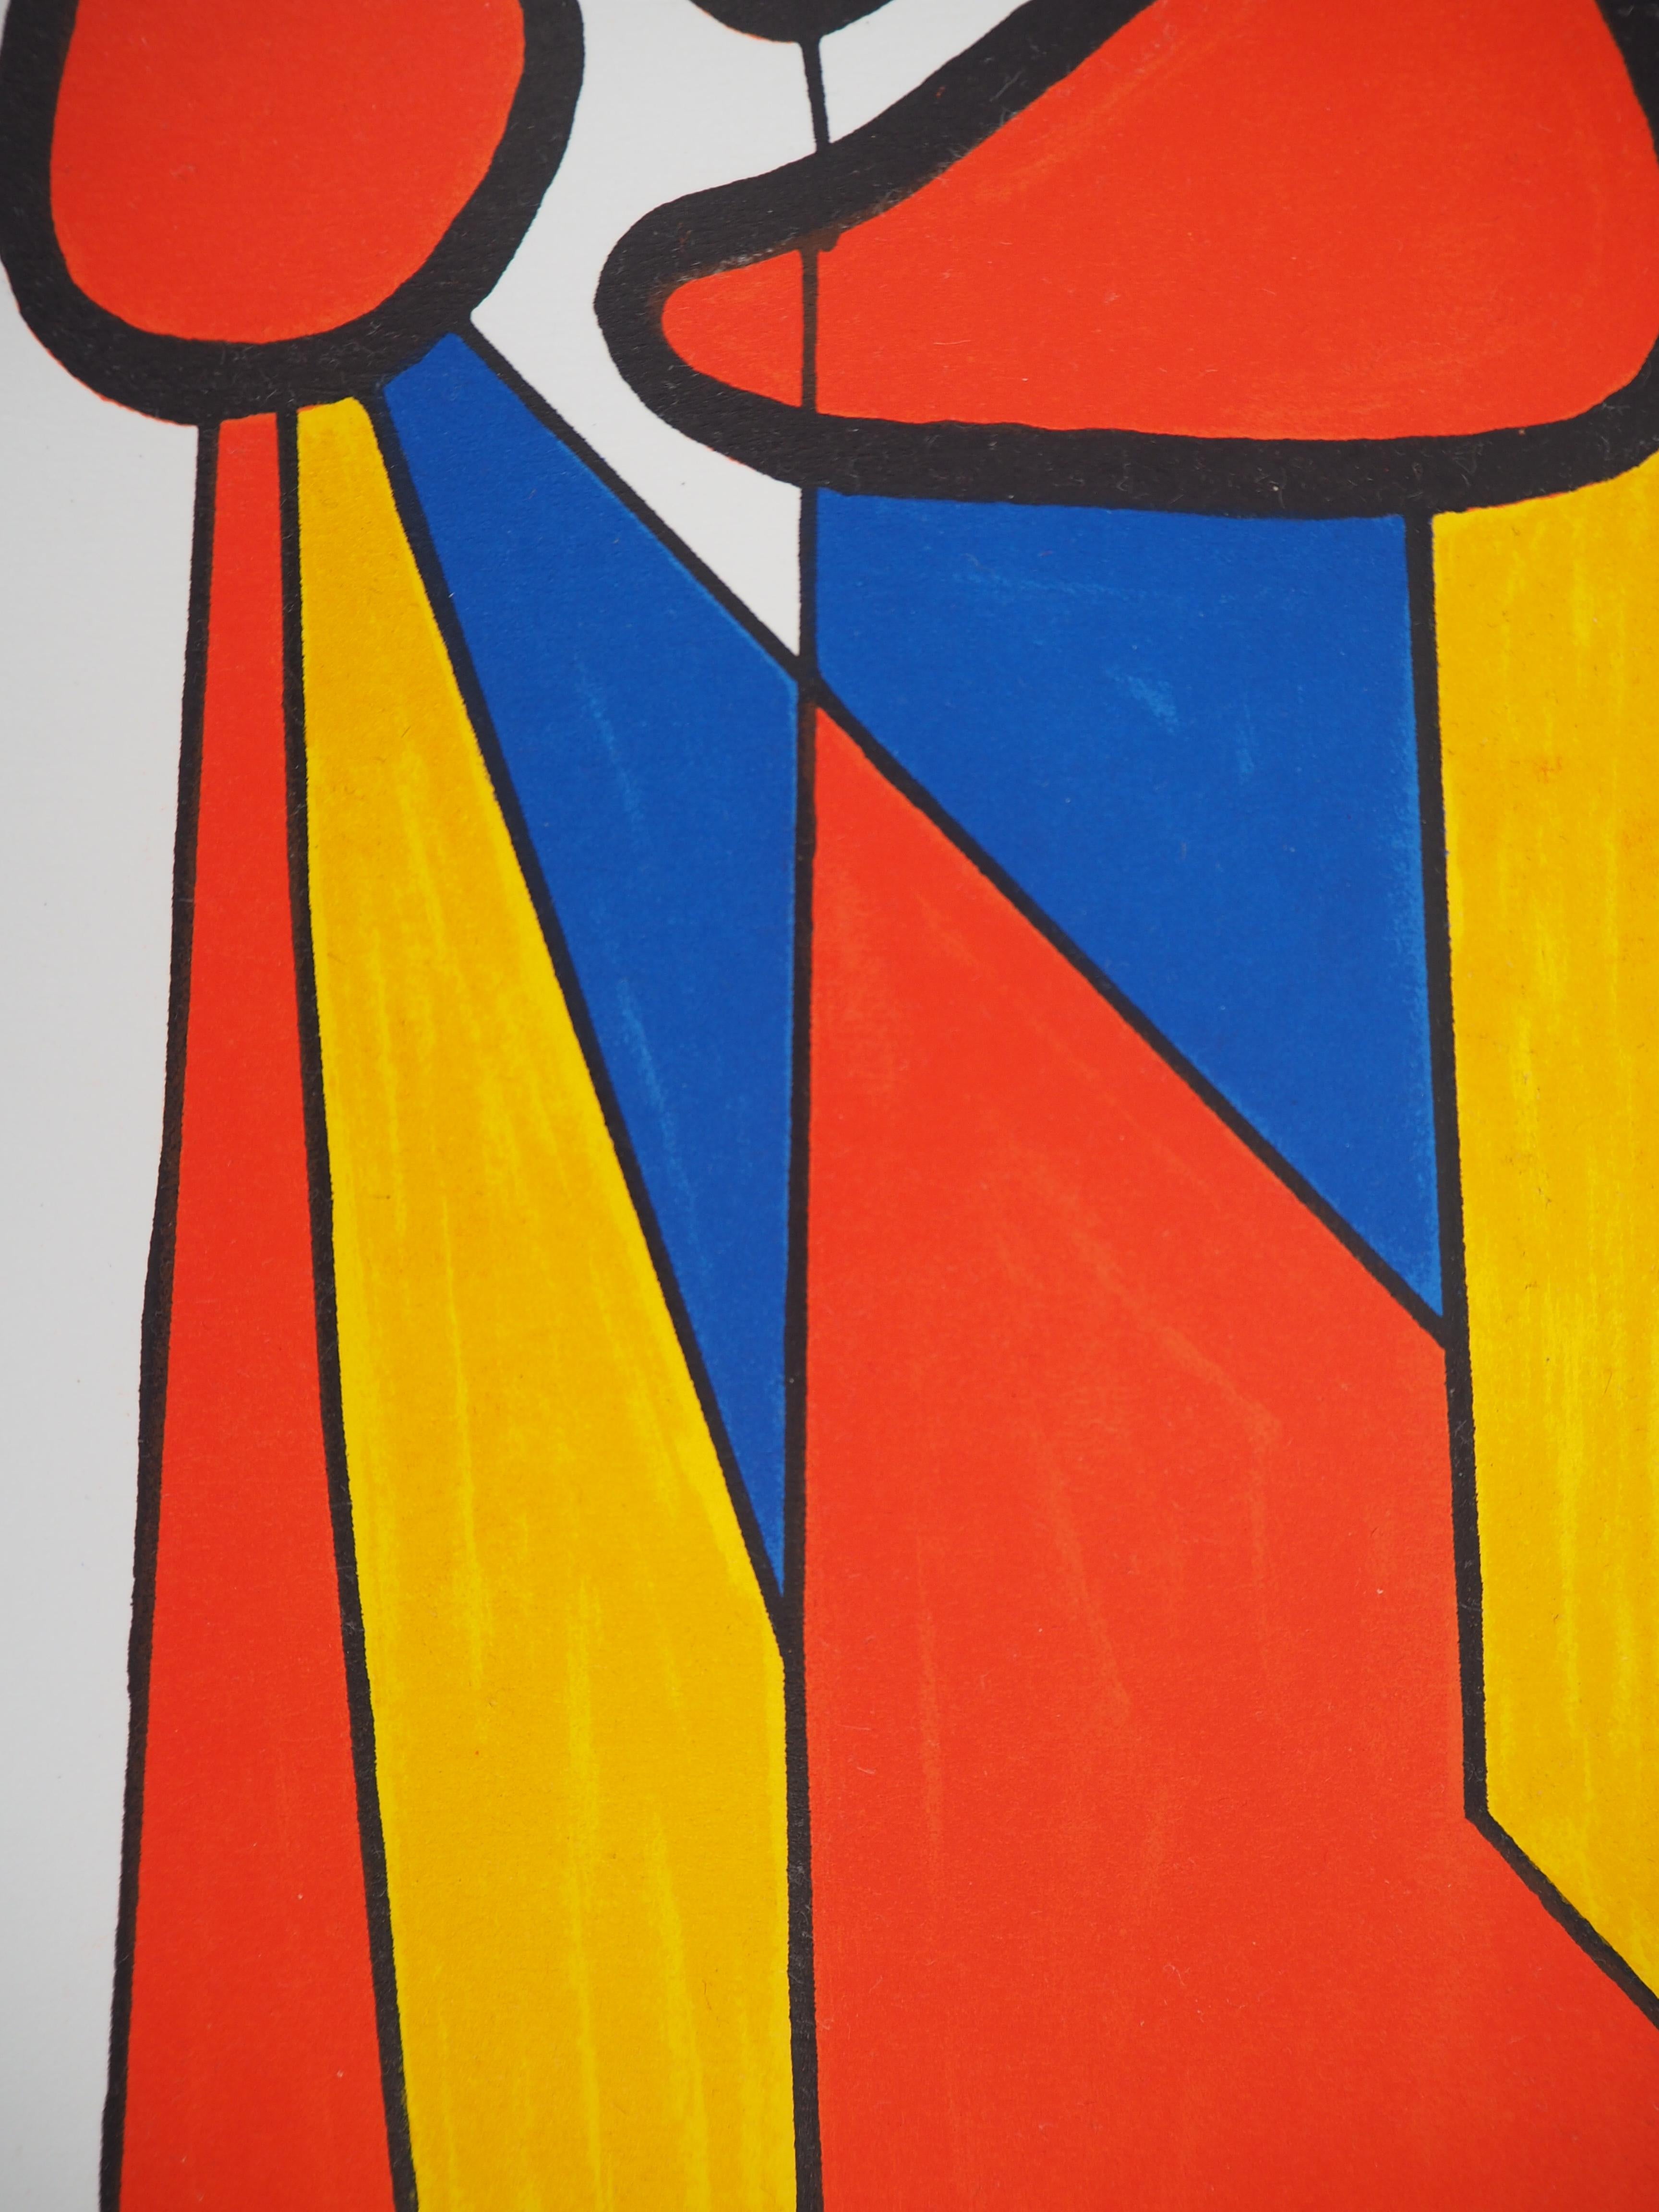 Alexander Calder
Komposition in Rot, Gelb und Blau, 1972

Original-Lithographie (4 Farbsteine)
Gedruckt in der Werkstatt von Mourlot
Auf Pergament 31 x 24 cm (ca. 12,2 x 9,5 in)
Herausgegeben von San Lazzaro im Jahr 1972; unsigniert und nicht